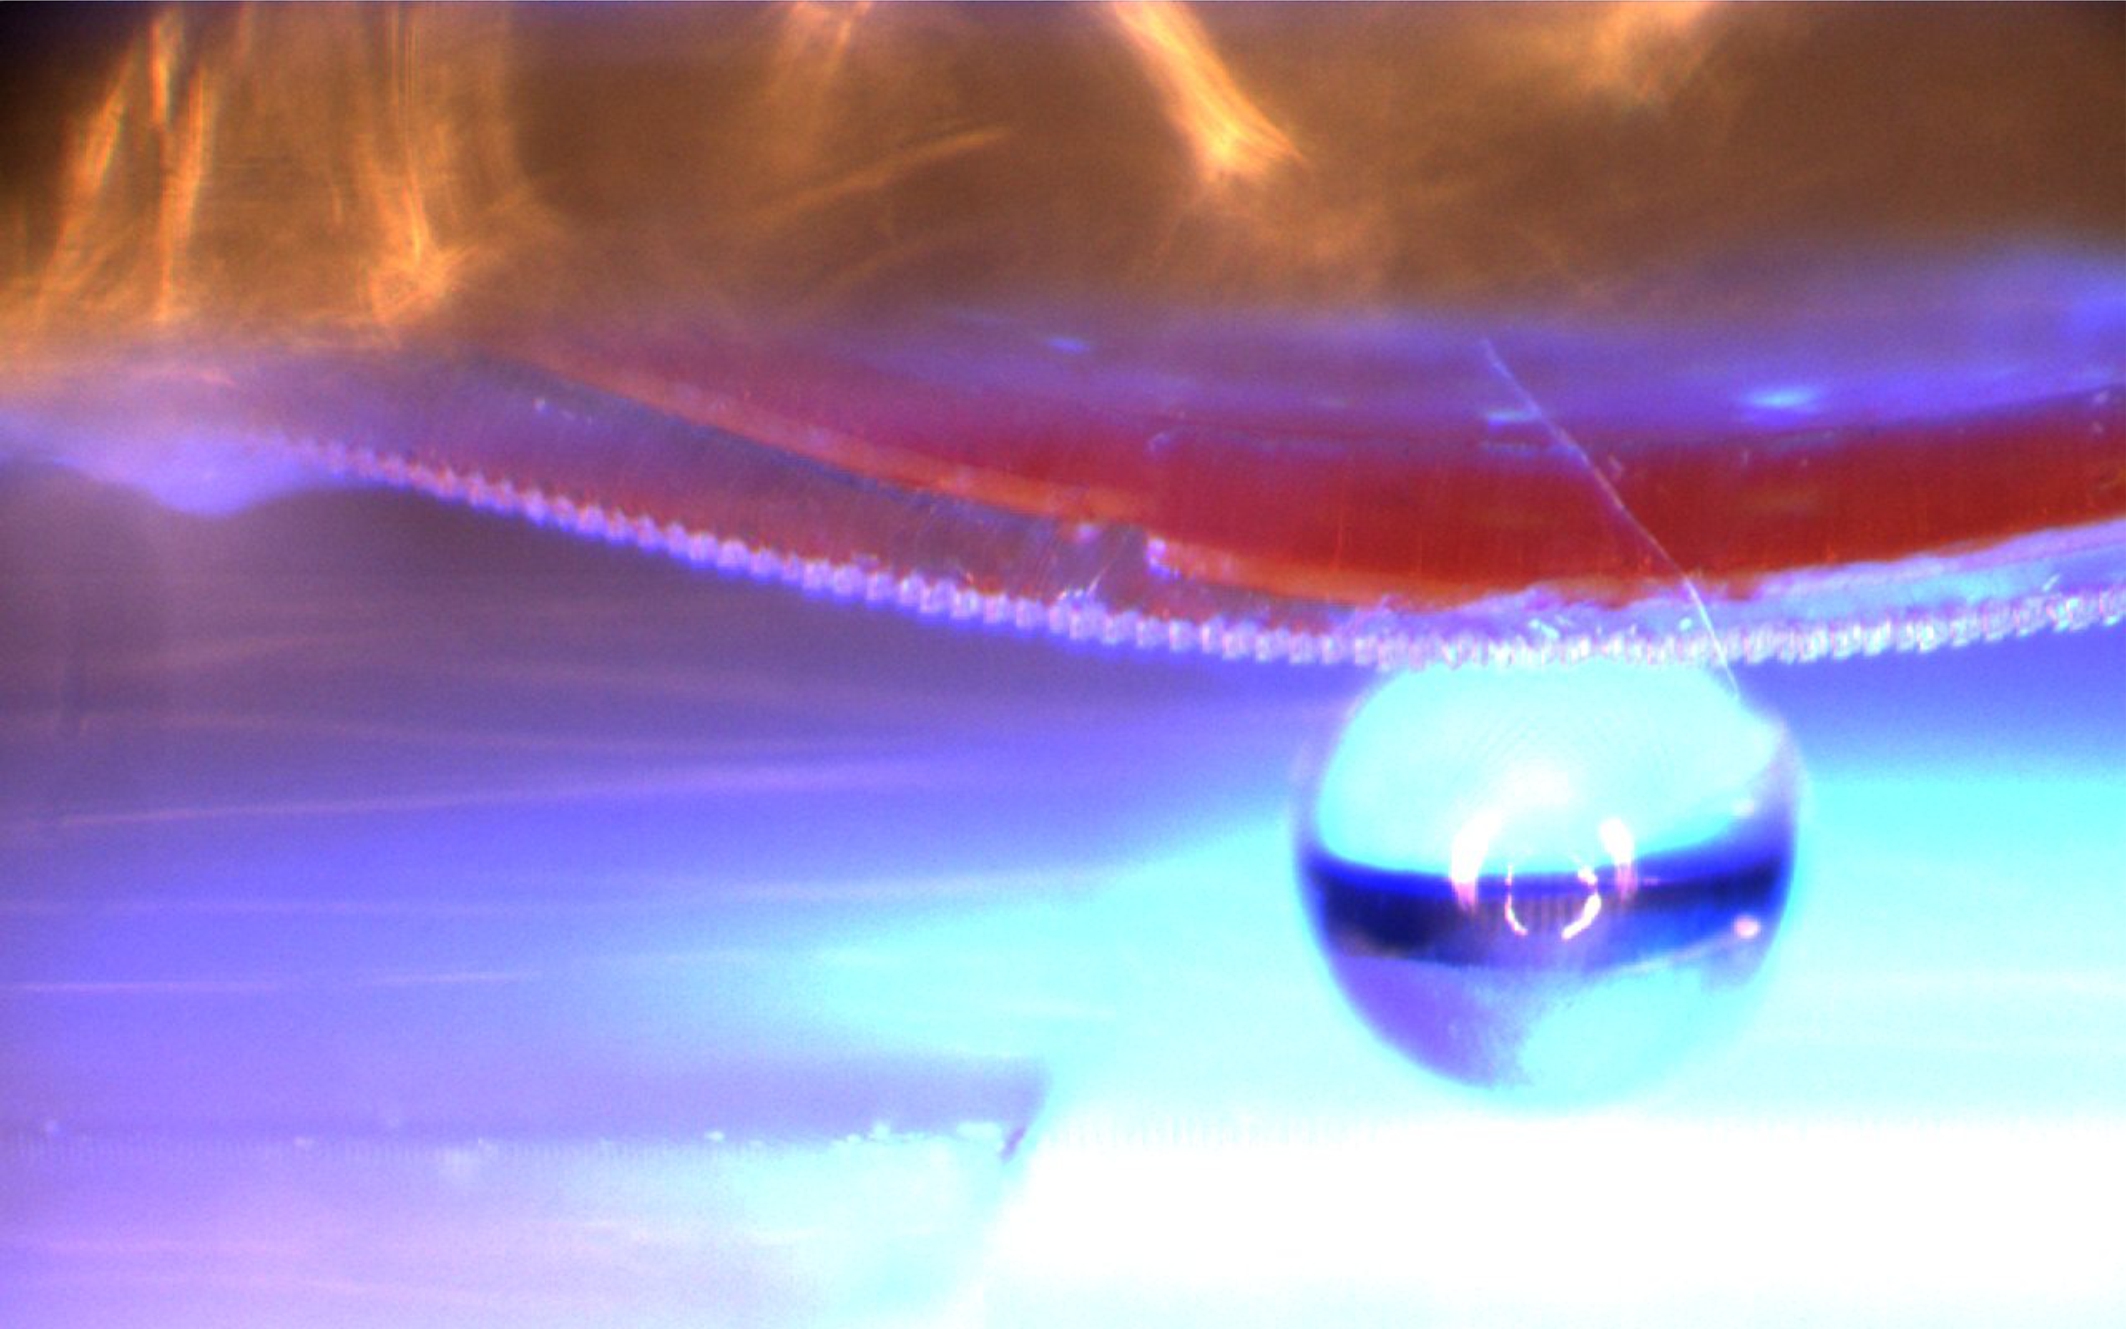 Cuando se ilumina con luz ultravioleta, el material inteligente con la superficie adhesiva se dobla. De esta manera puede levantar, transportar y colocar objetos planos y tridimensionales (aquí, una esfera de cristal de 1 milímetro de diámetro). Imagen: Emre Kizilkan. Fuente: Universidad de Kiel.